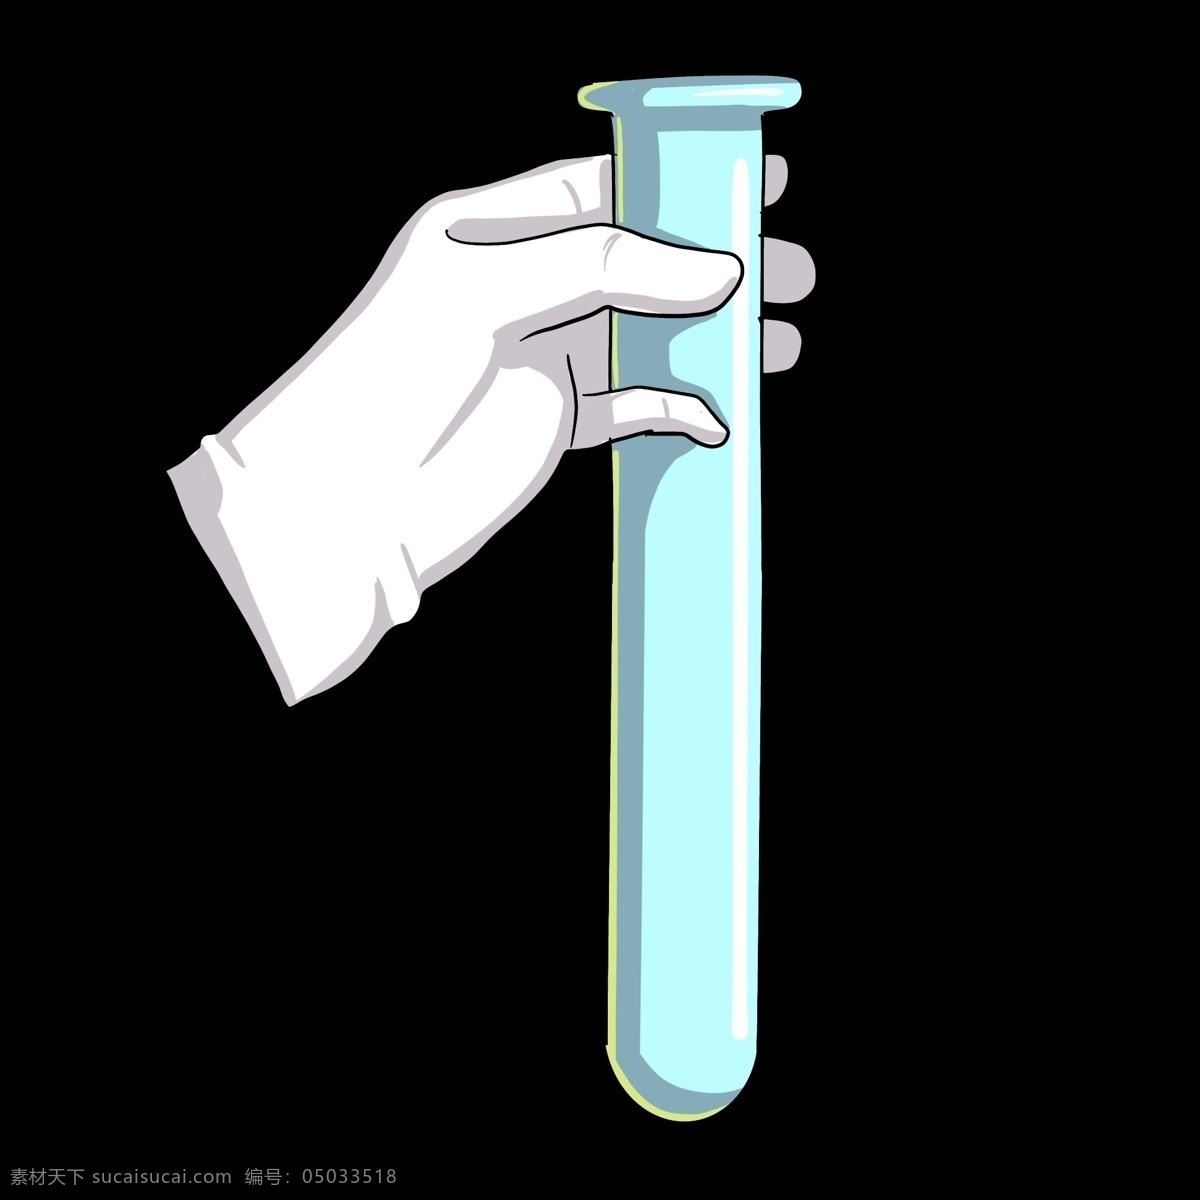 蓝色 实验 试管 插图 立体试管 化学实验 实验室管 蓝色试管 化学仪器 白色手套 实验用品 卡通手套 装饰试管